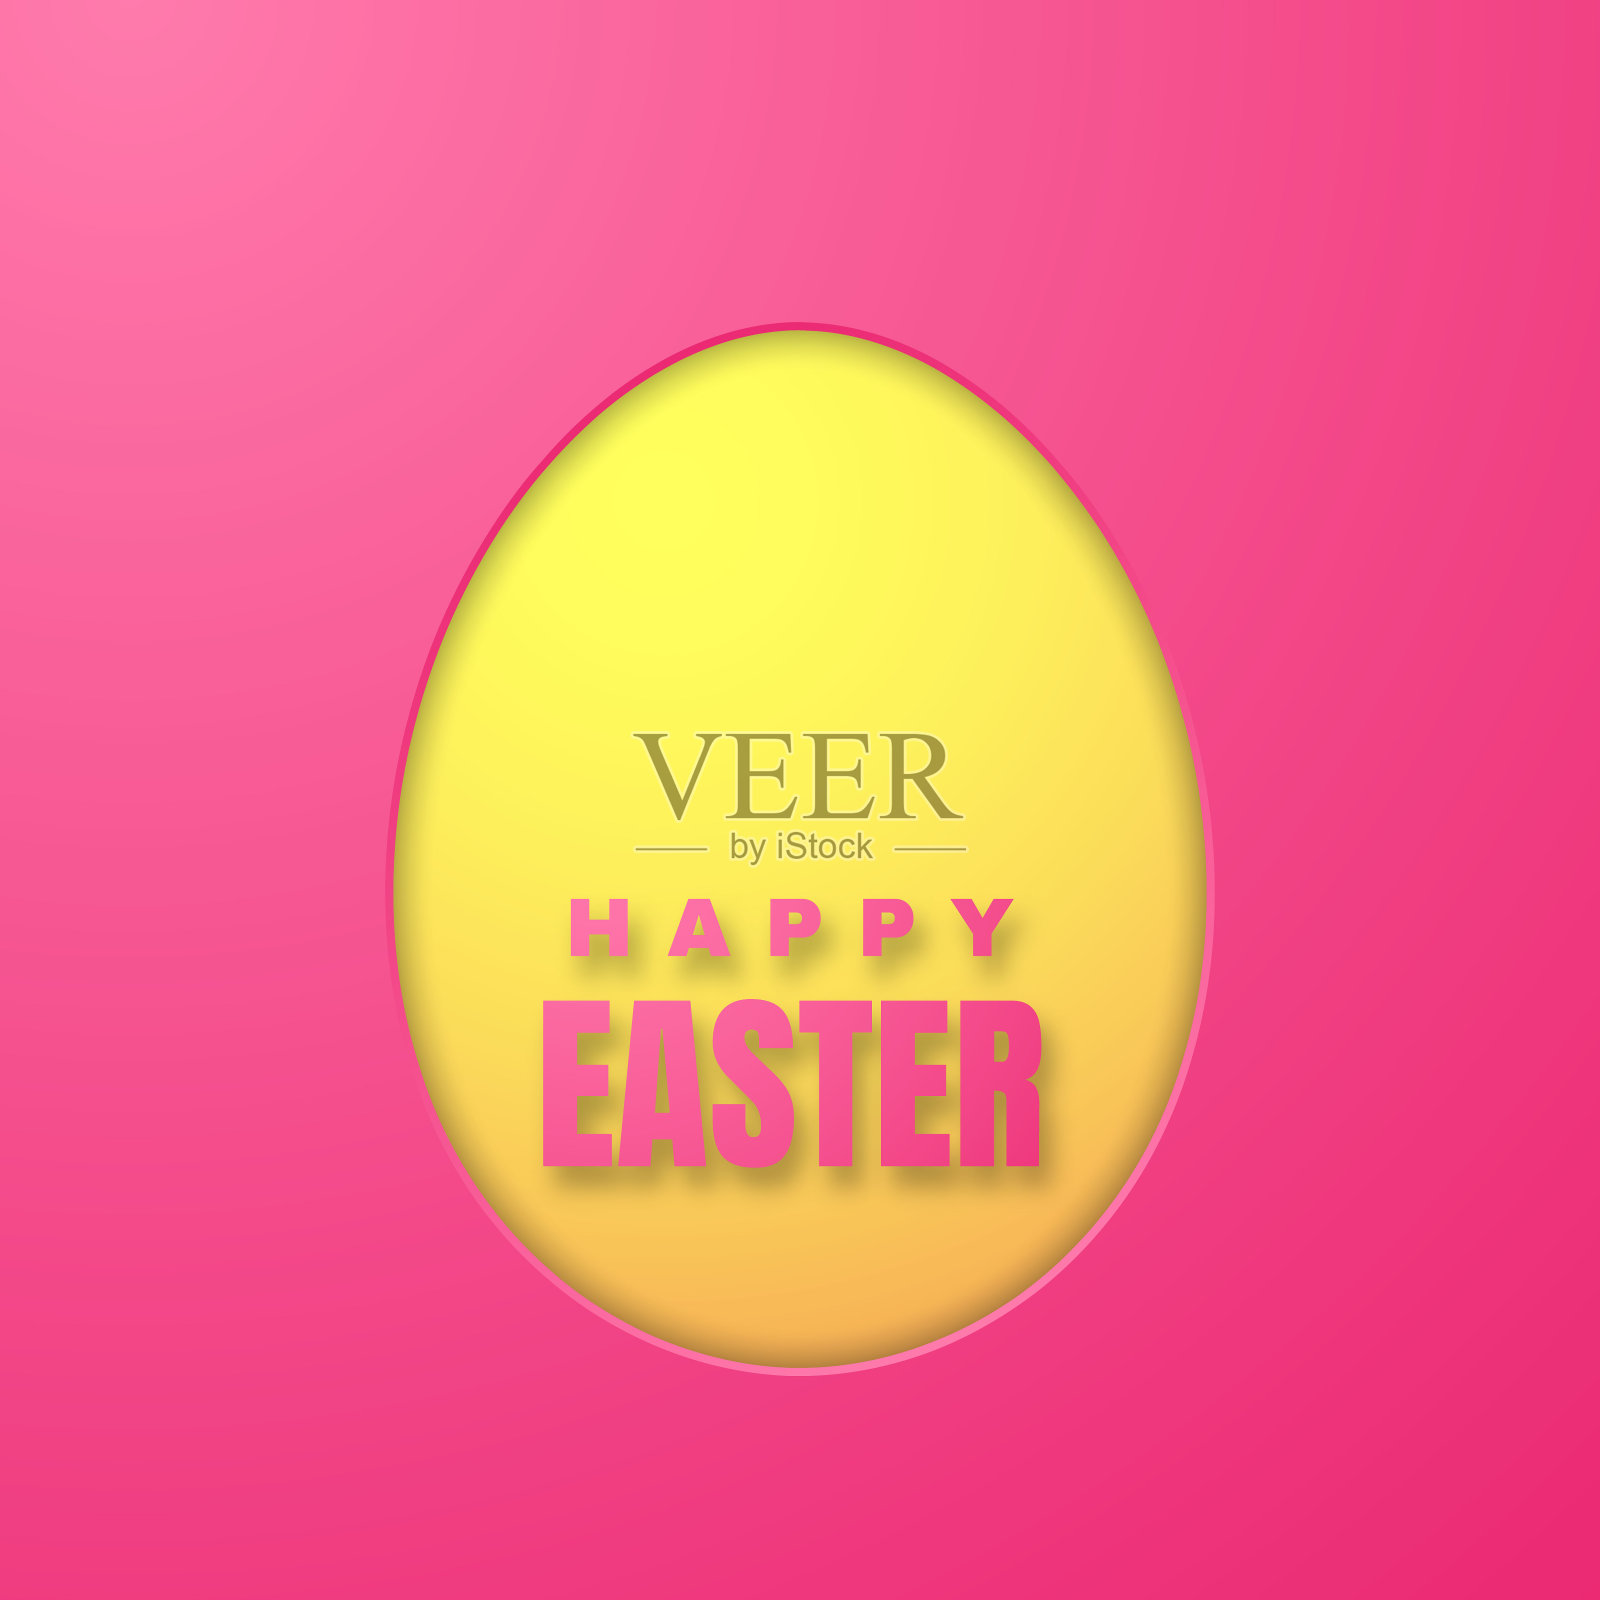 复活节快乐贺卡与彩色纸复活节彩蛋在粉红色的背景。矢量图插画图片素材